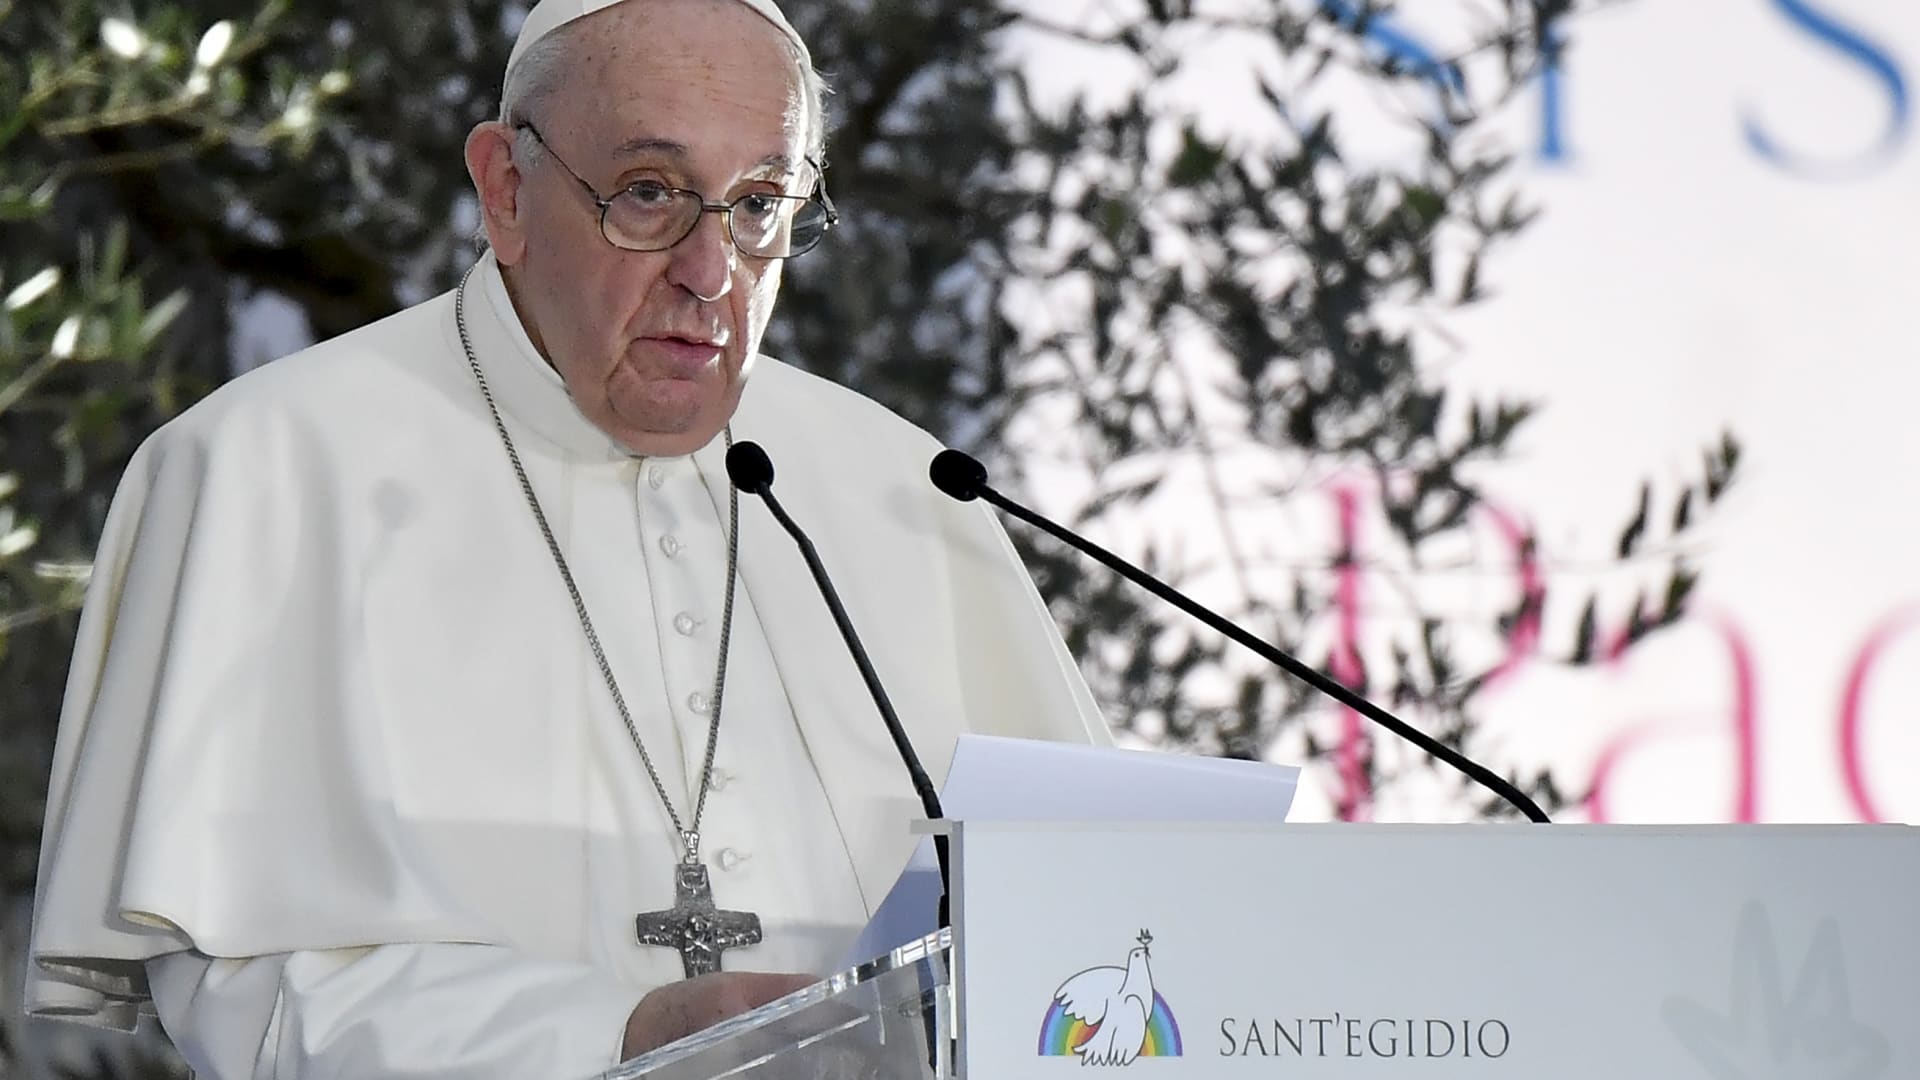 البابا فرنسيس يدعو لحماية المثليين: "أبناء الله" ويجب حمايتهم قانونيا